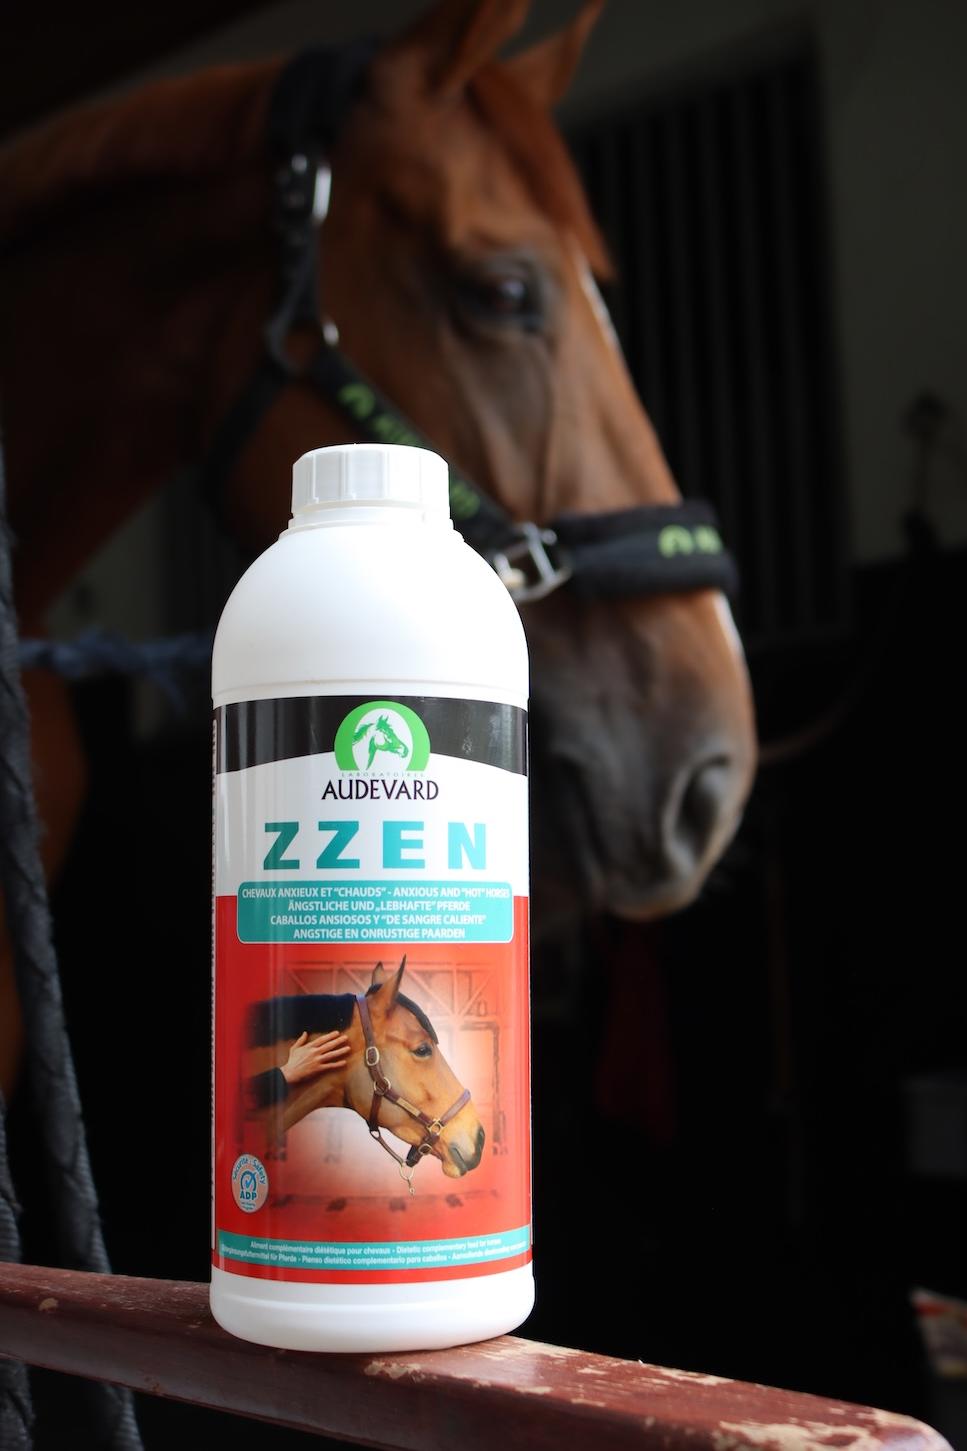 Les aliments complémentaires diététiques pour chevaux ne vont jamais remplacer un calmant. Pour les compétiteurs, privilégier les produits répondant aux normes antidopage.